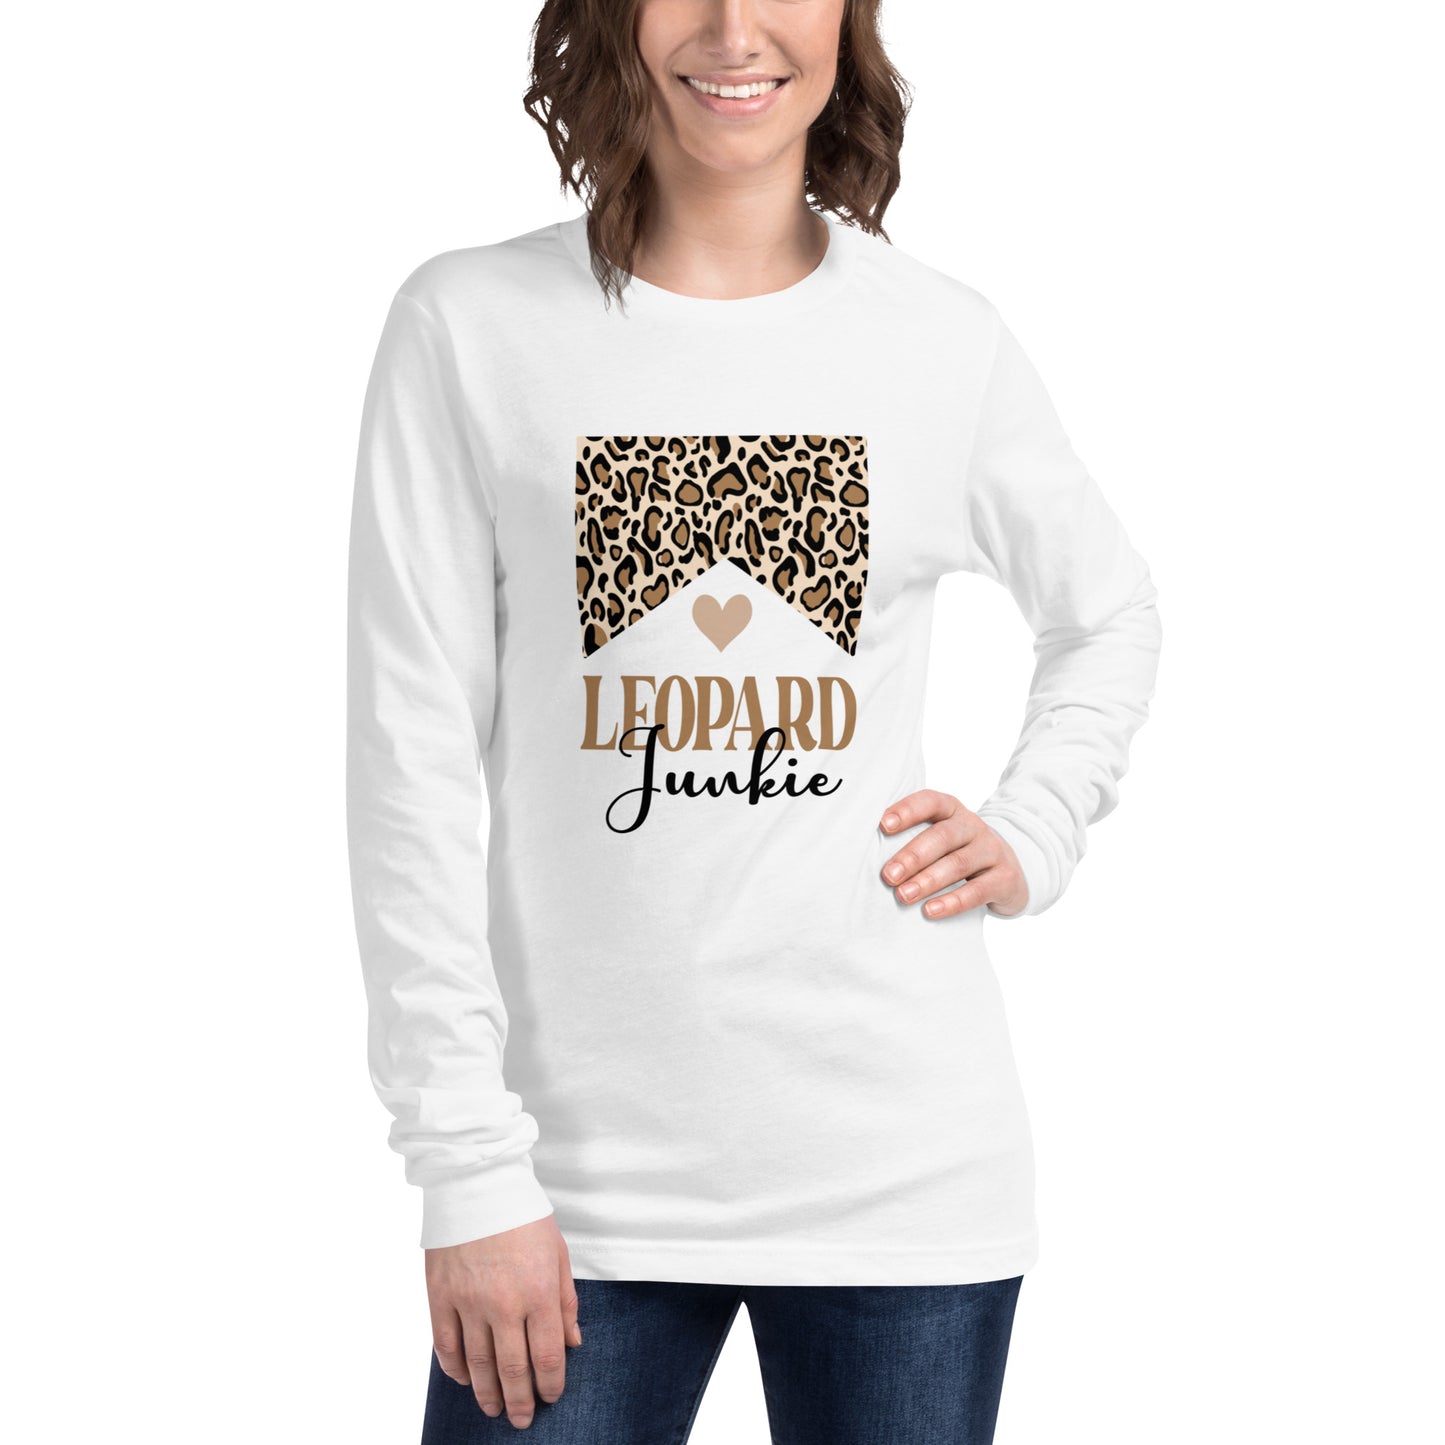 "Leopard Junkie" Unisex Long Sleeve Tee